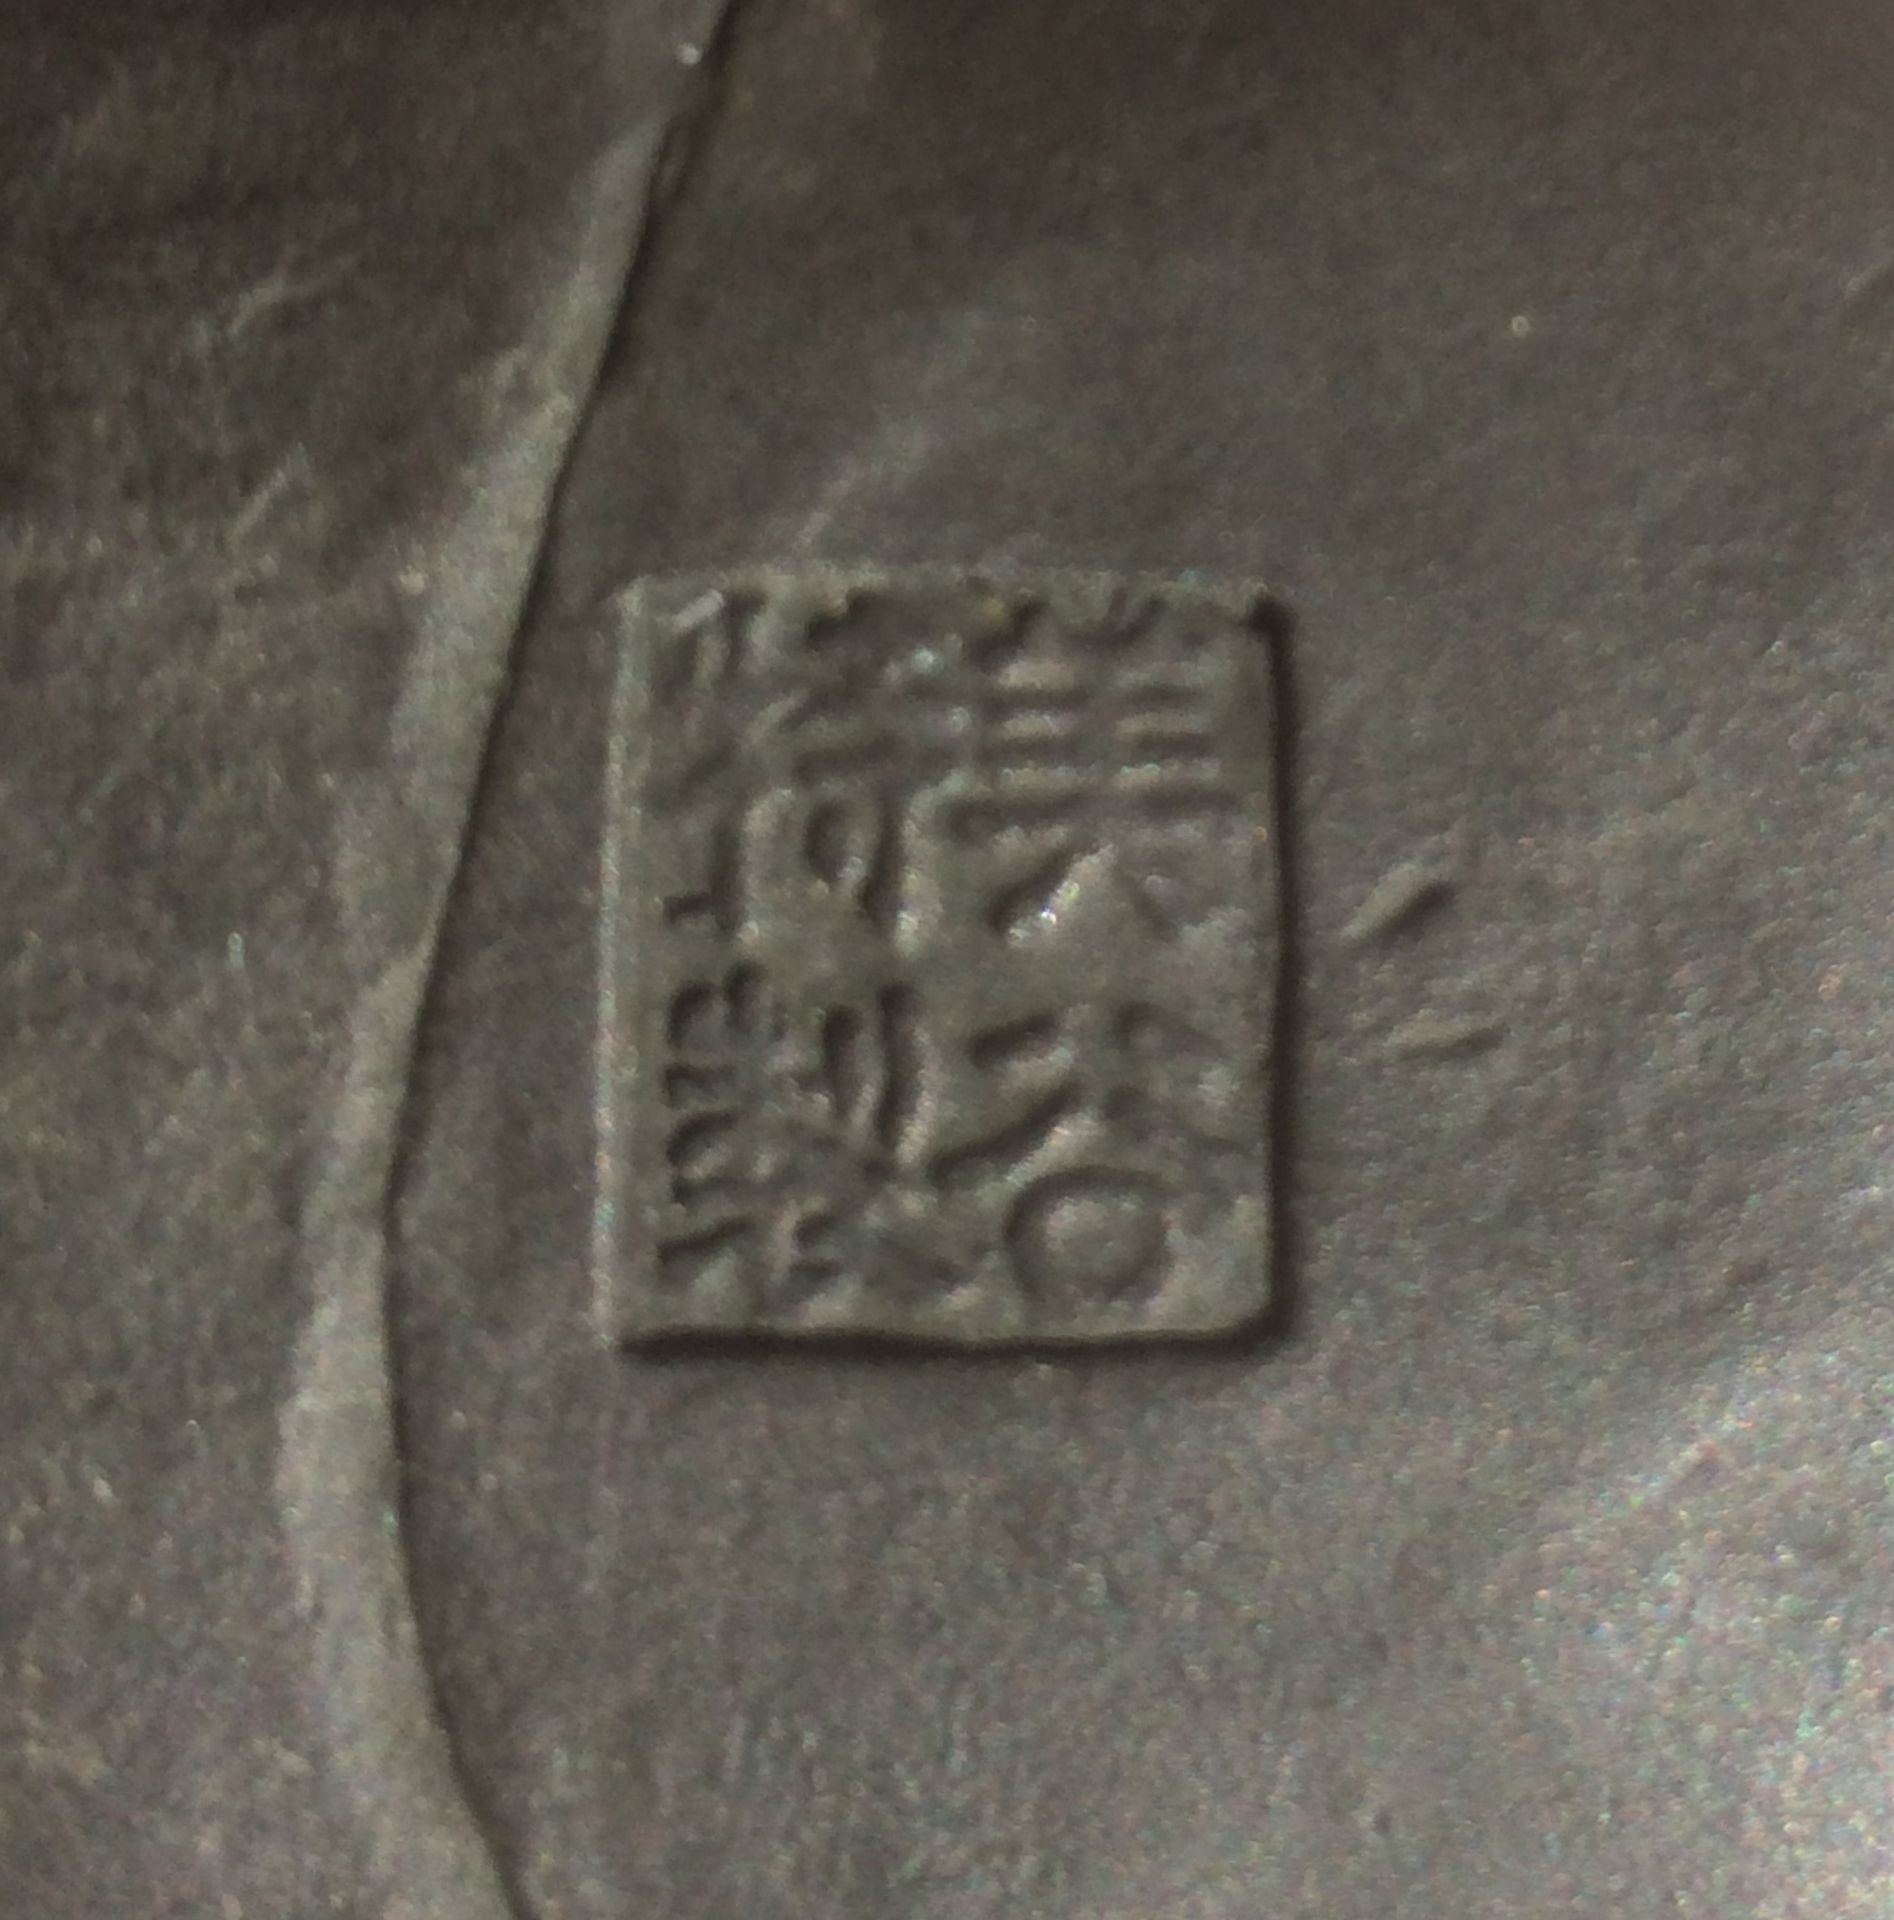 KNABE MIT FISCH UND ANGEL. Japan. Meiji-Zeit. Bronze mit dunkler Patina. Passender Sockel aus Holz - Bild 3 aus 4